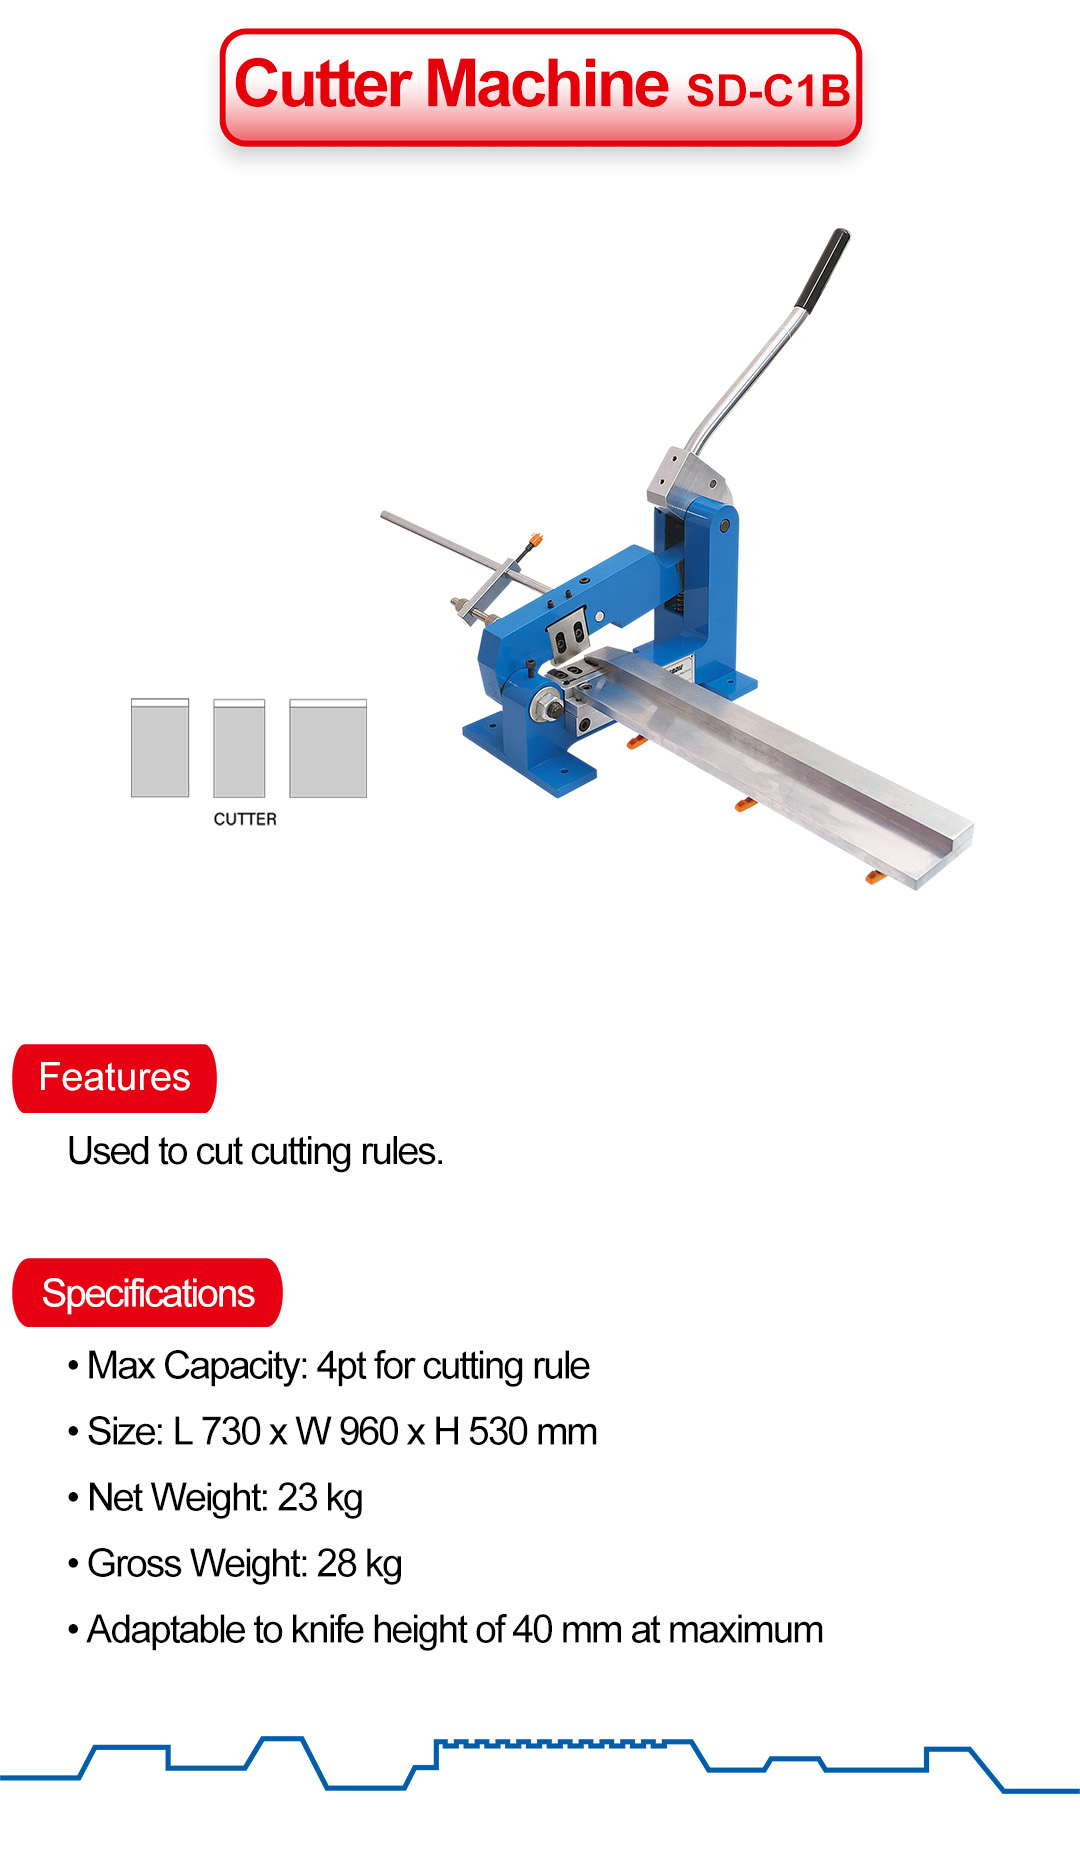 Cutter Machine: SD-C1B